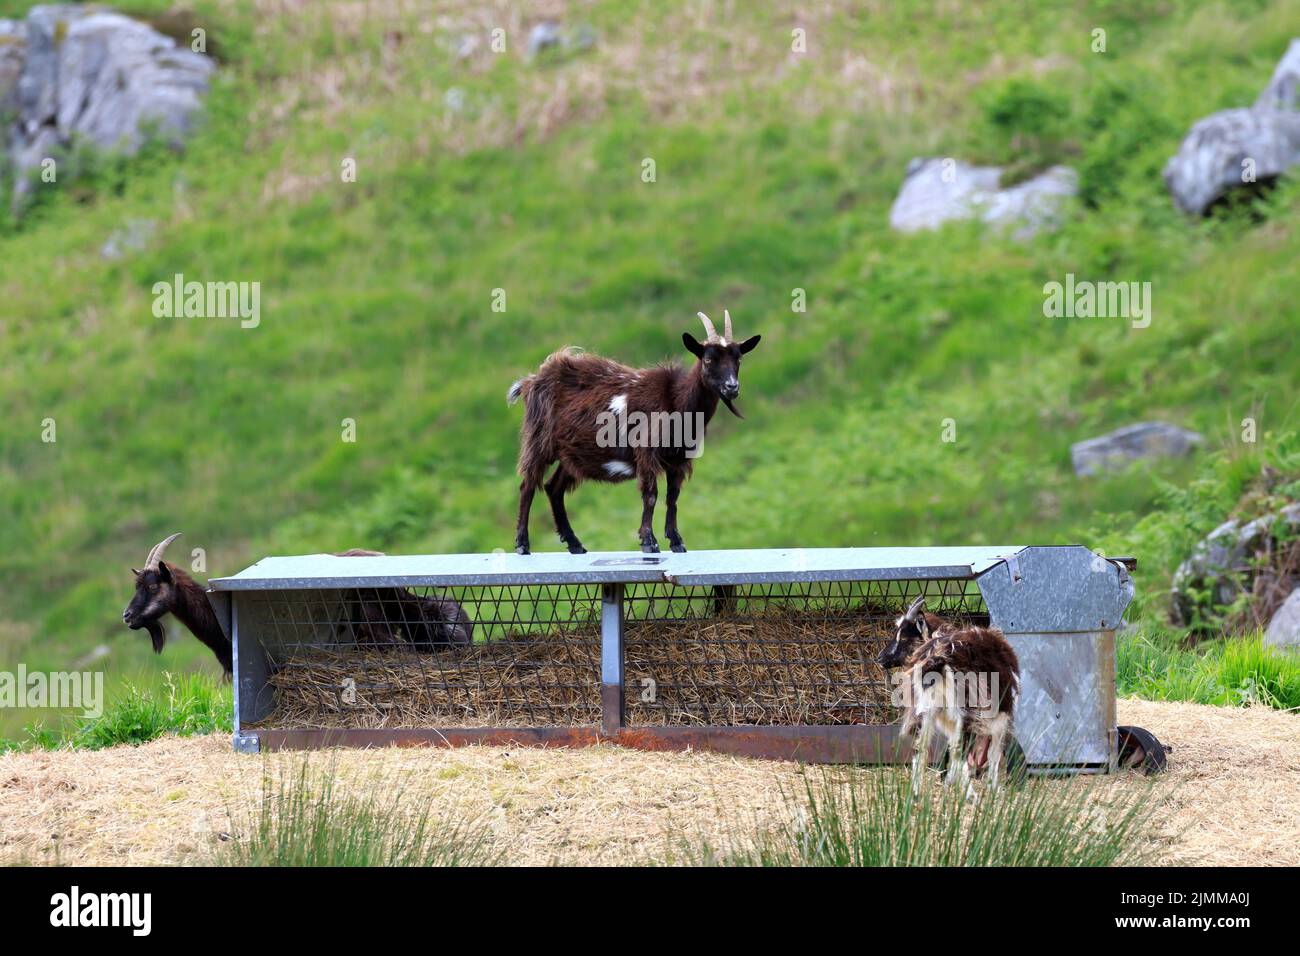 Goat sauvage debout au-dessus d'une gouttière d'alimentation d'animaux regardant la caméra Banque D'Images